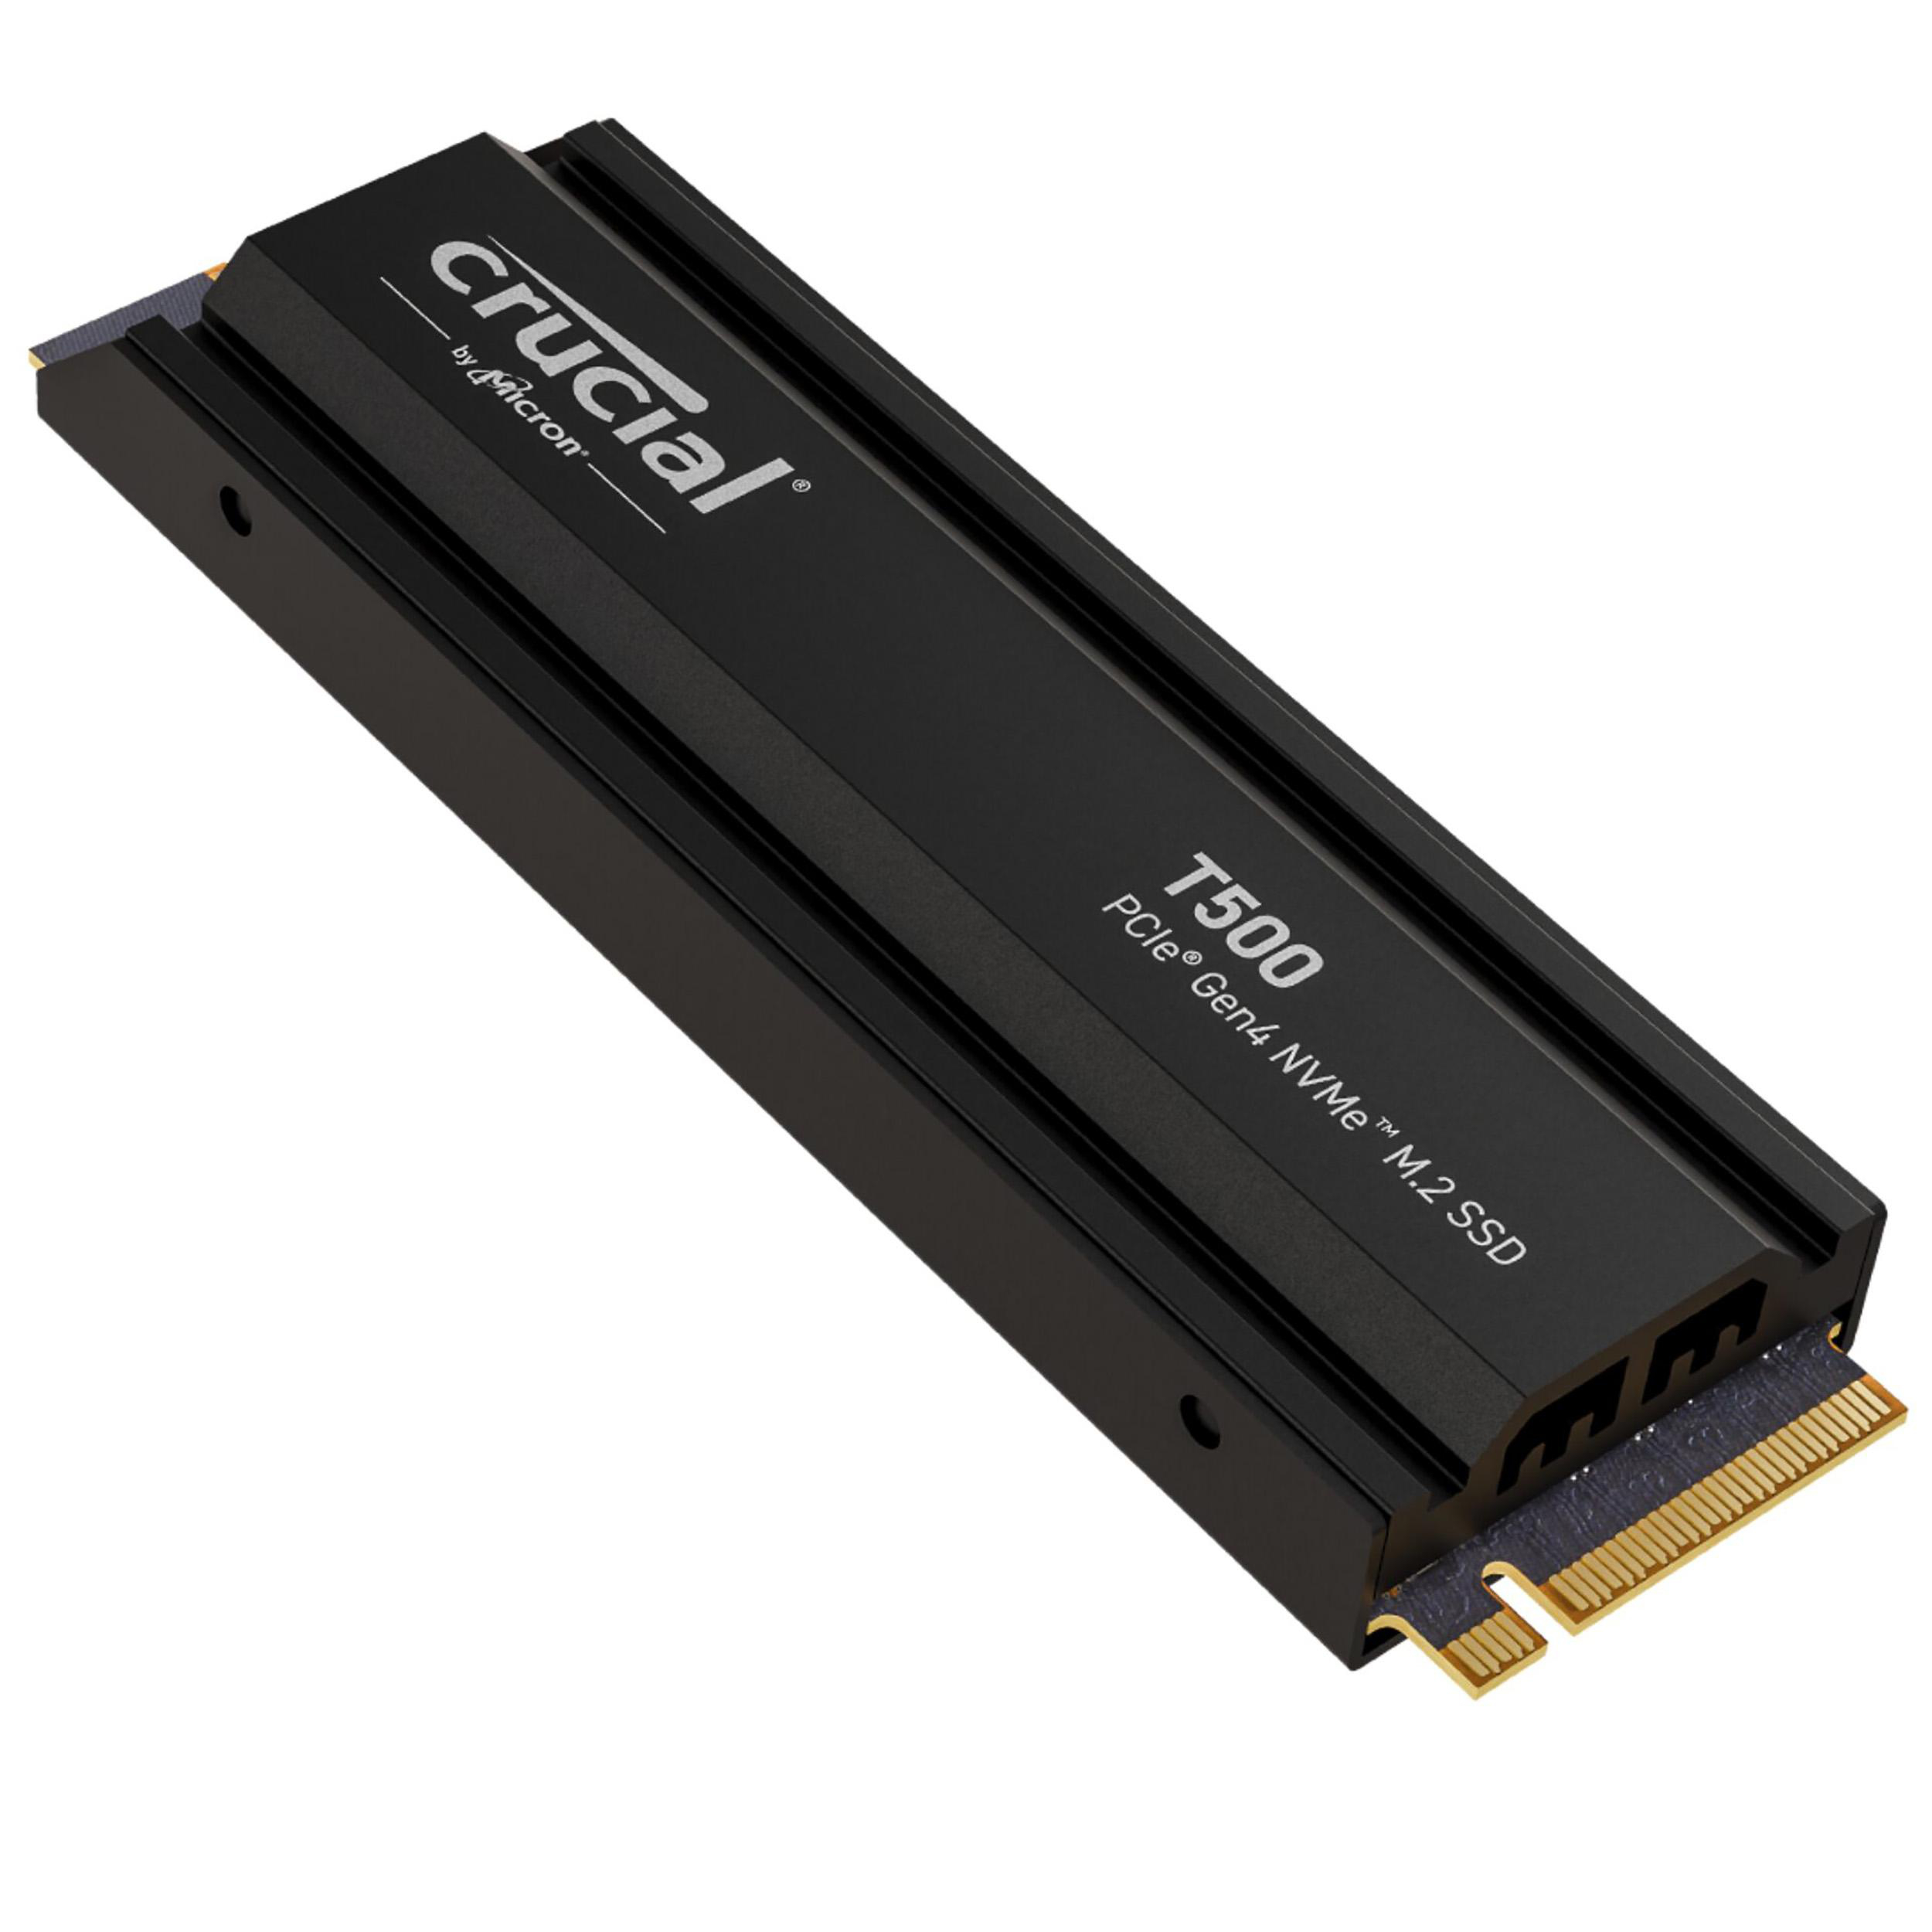 Festplatte, intern Heatsink 2 SSD TB mit M.2, CRUCIAL T500